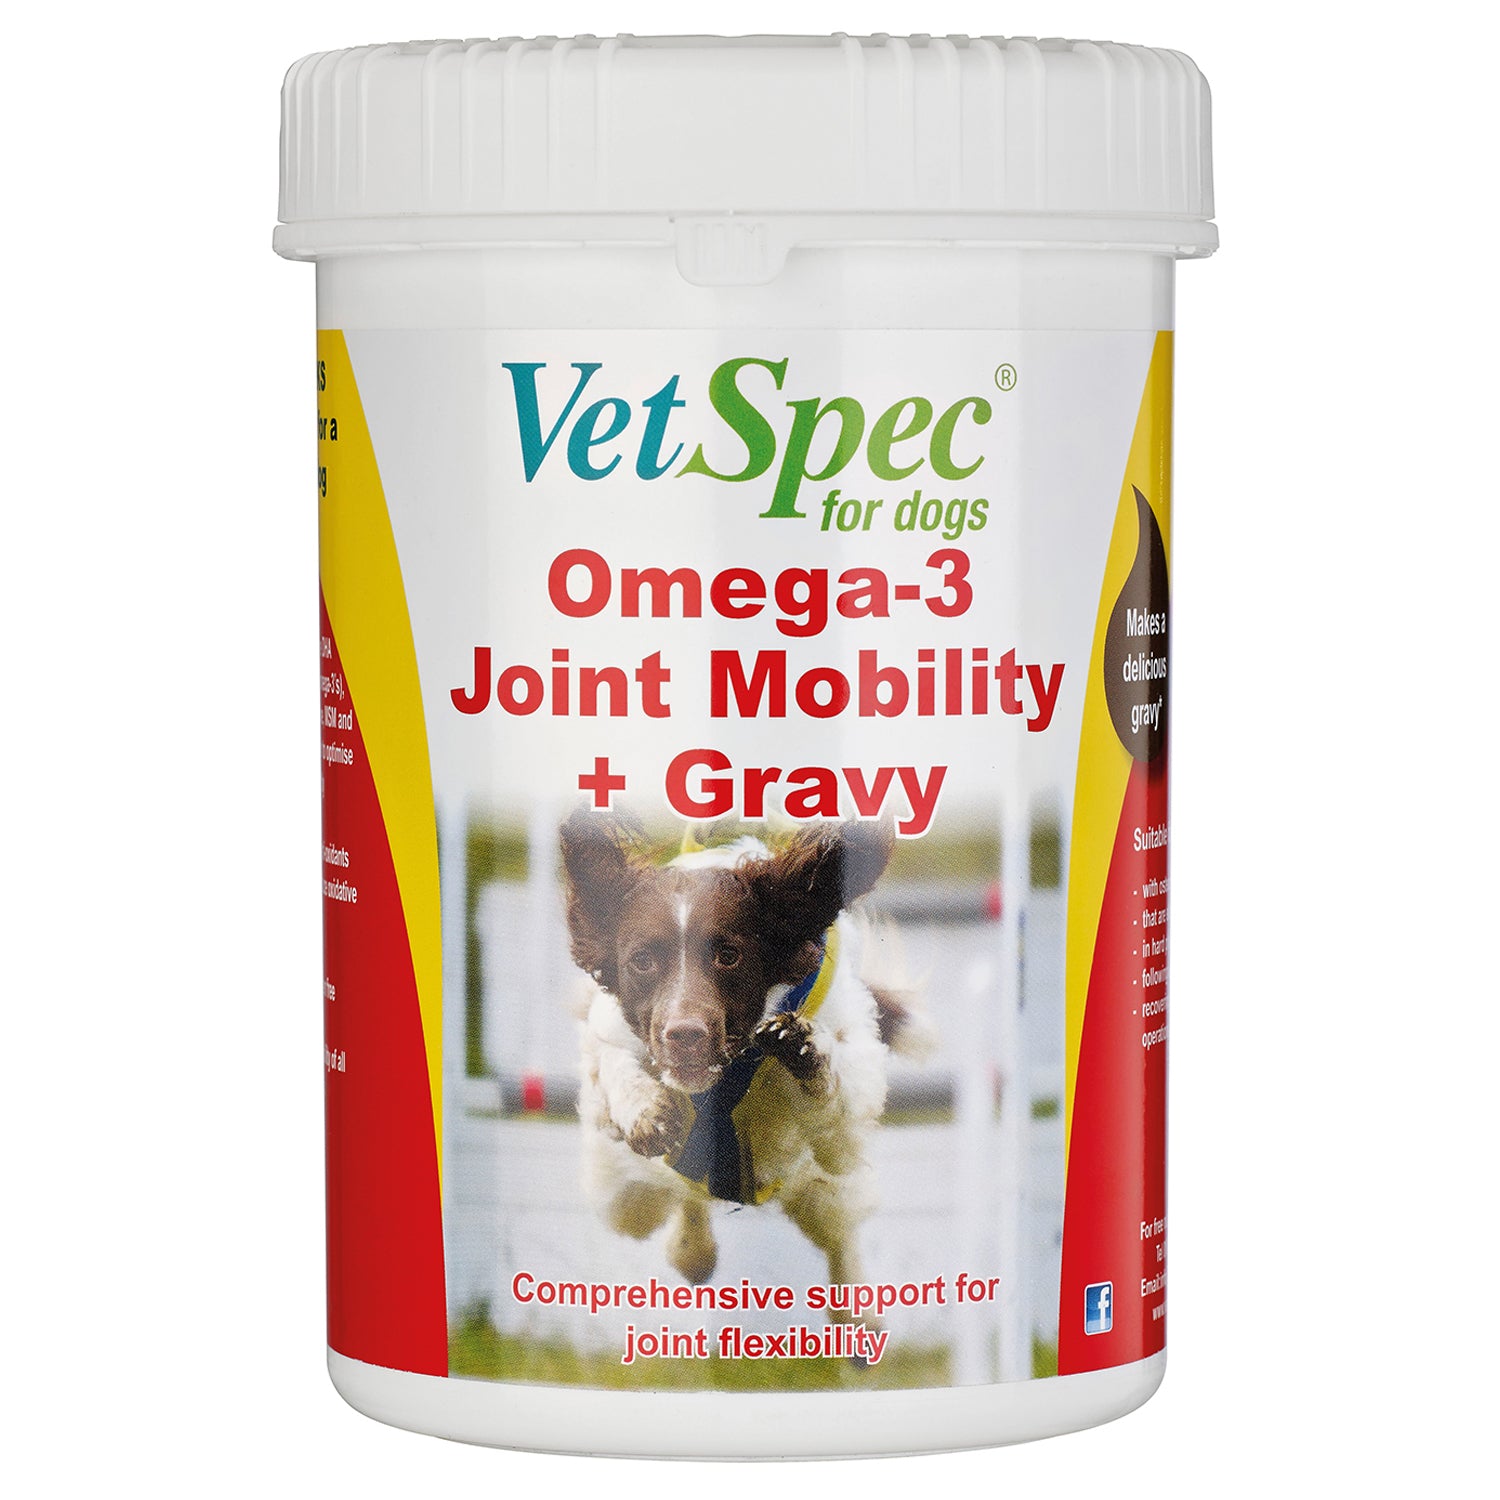 Vetspec Omega-3 Joint Mobility + Gravy